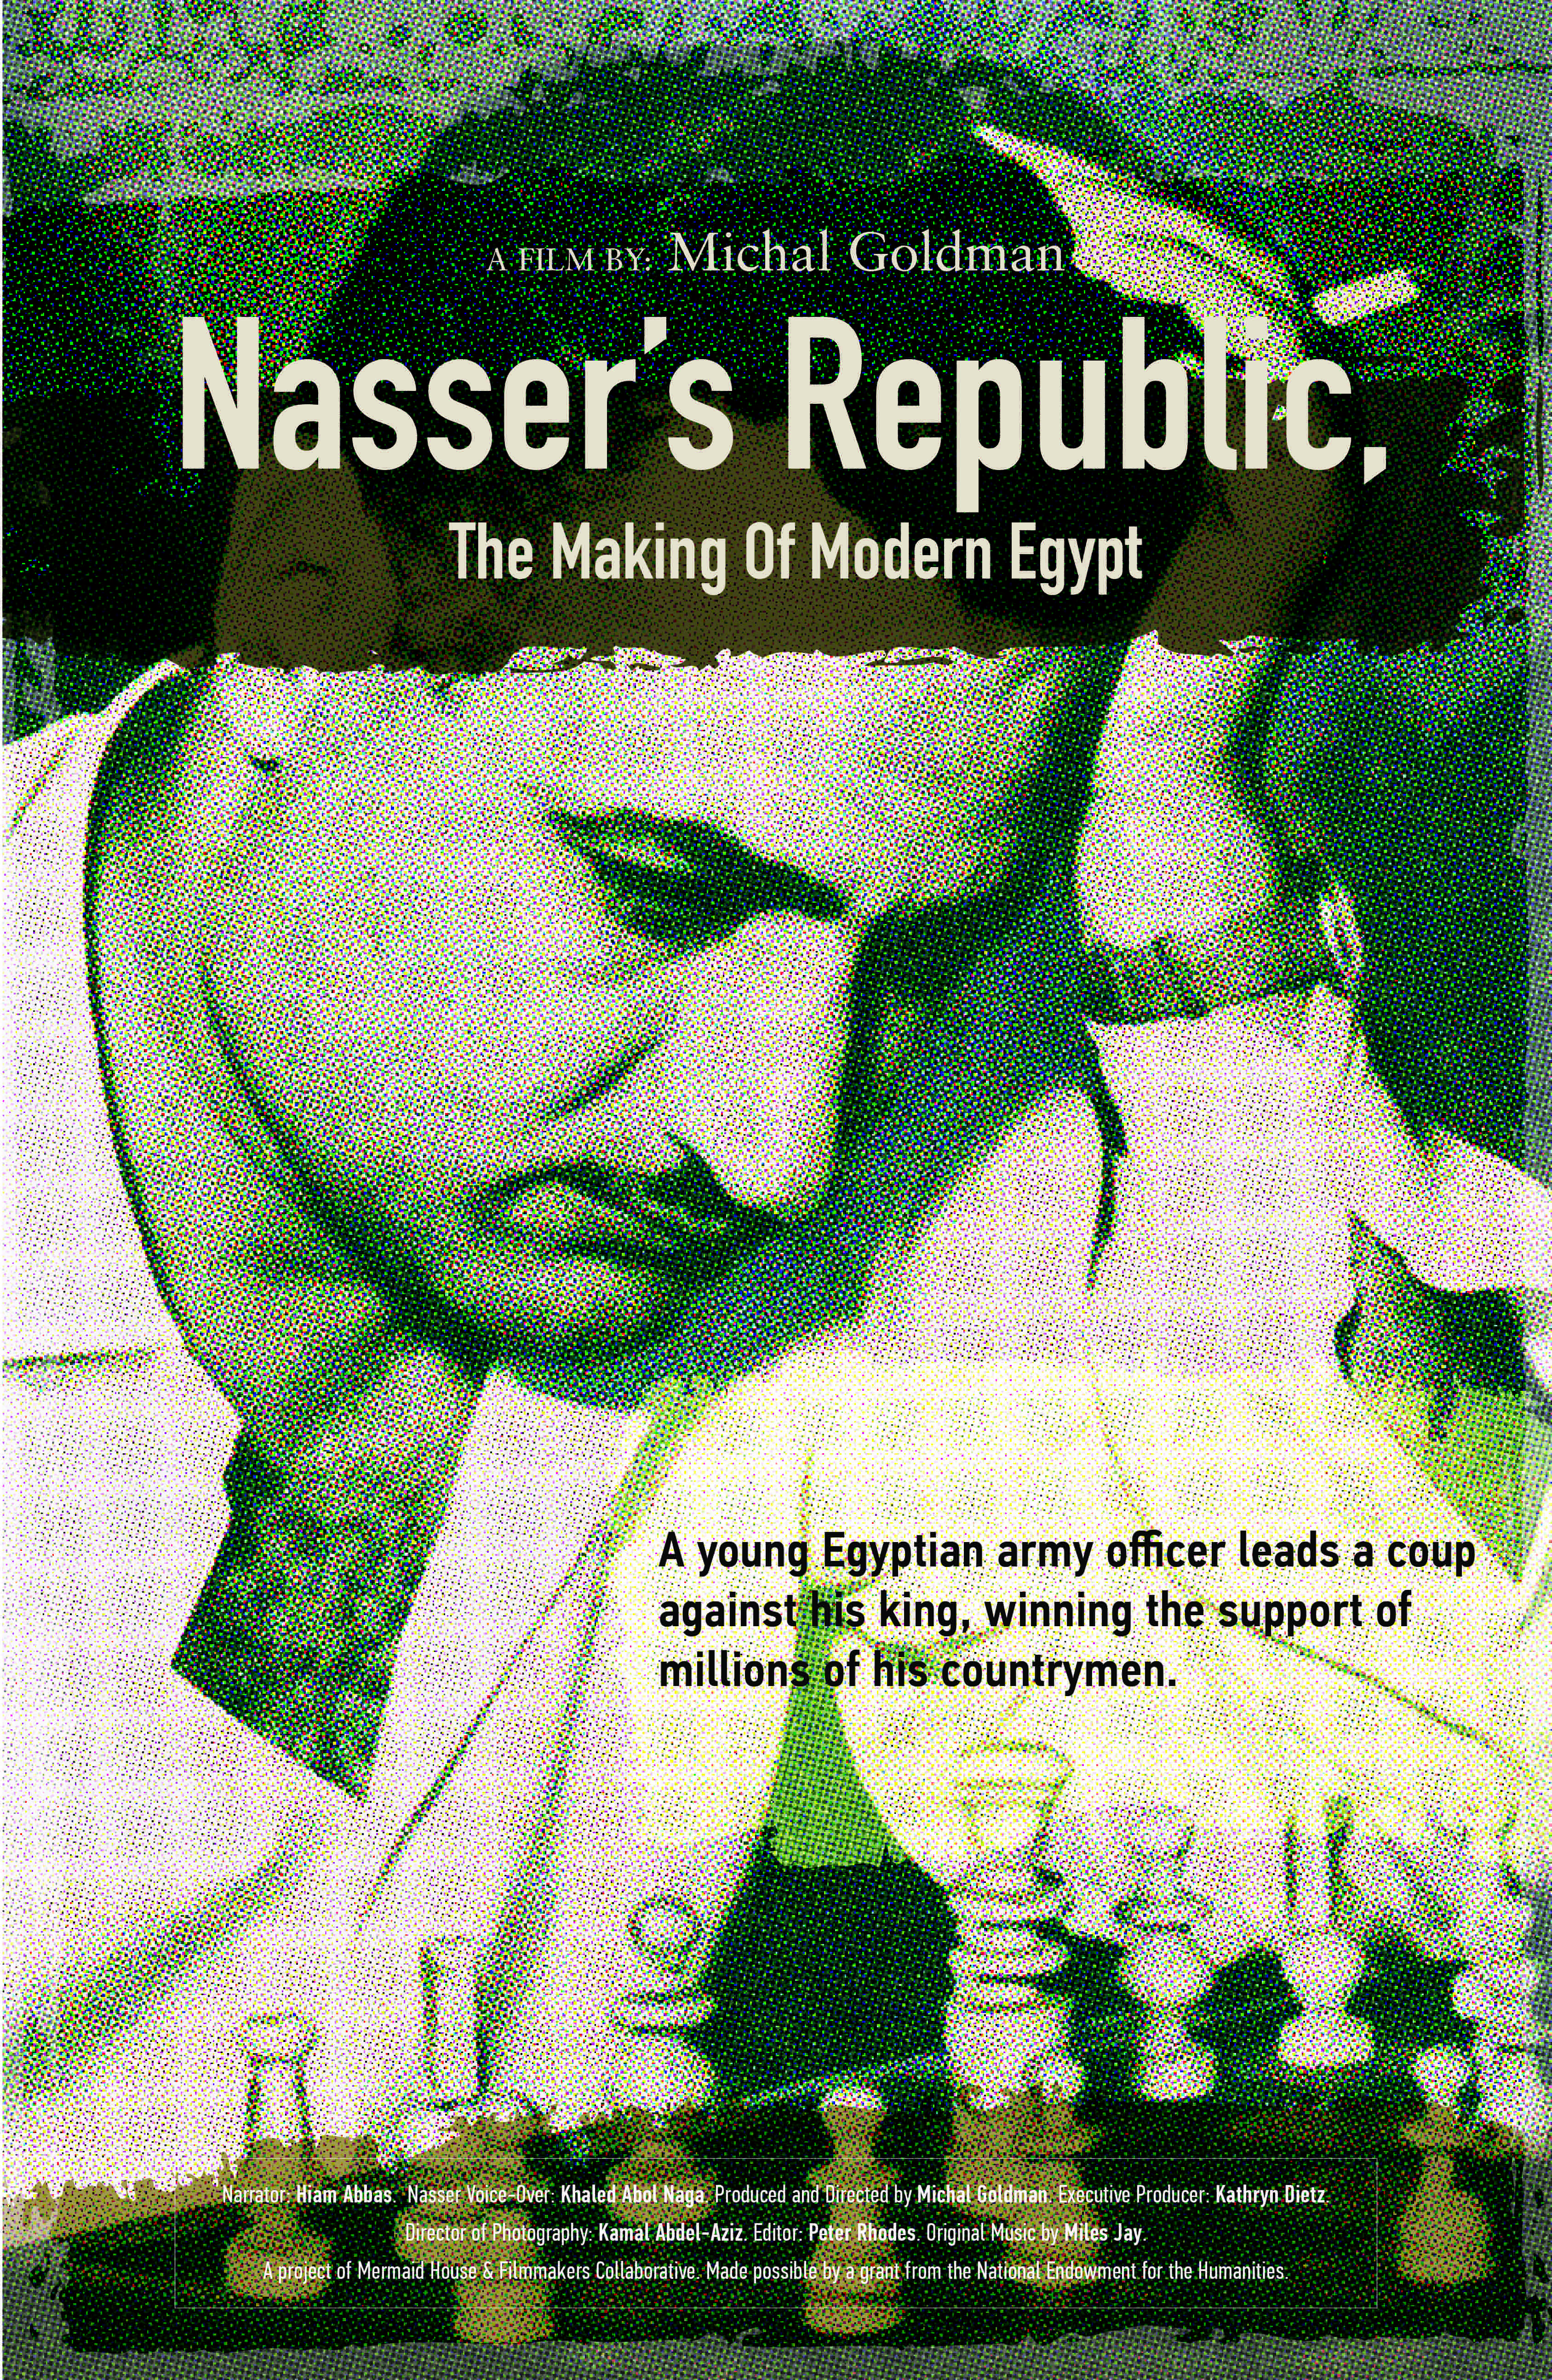 poster of Film—"Nasser's Republic: The Making of Modern Egypt"